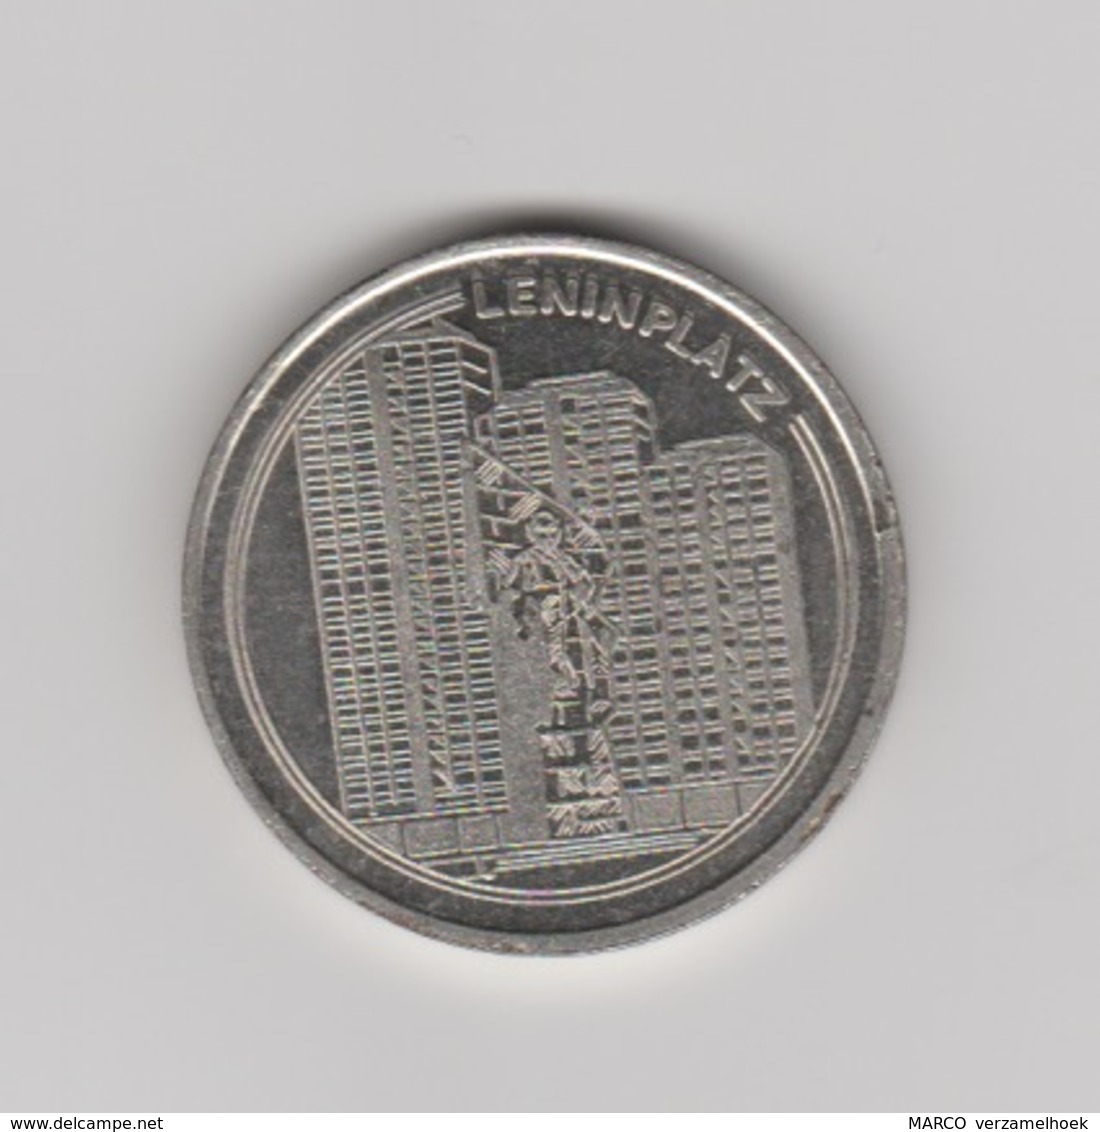 VEB Wohnungsbaukombinat "fritz Heckert" Berlin-berlijn (D) 1949-1989 Leninplatz - Souvenir-Medaille (elongated Coins)